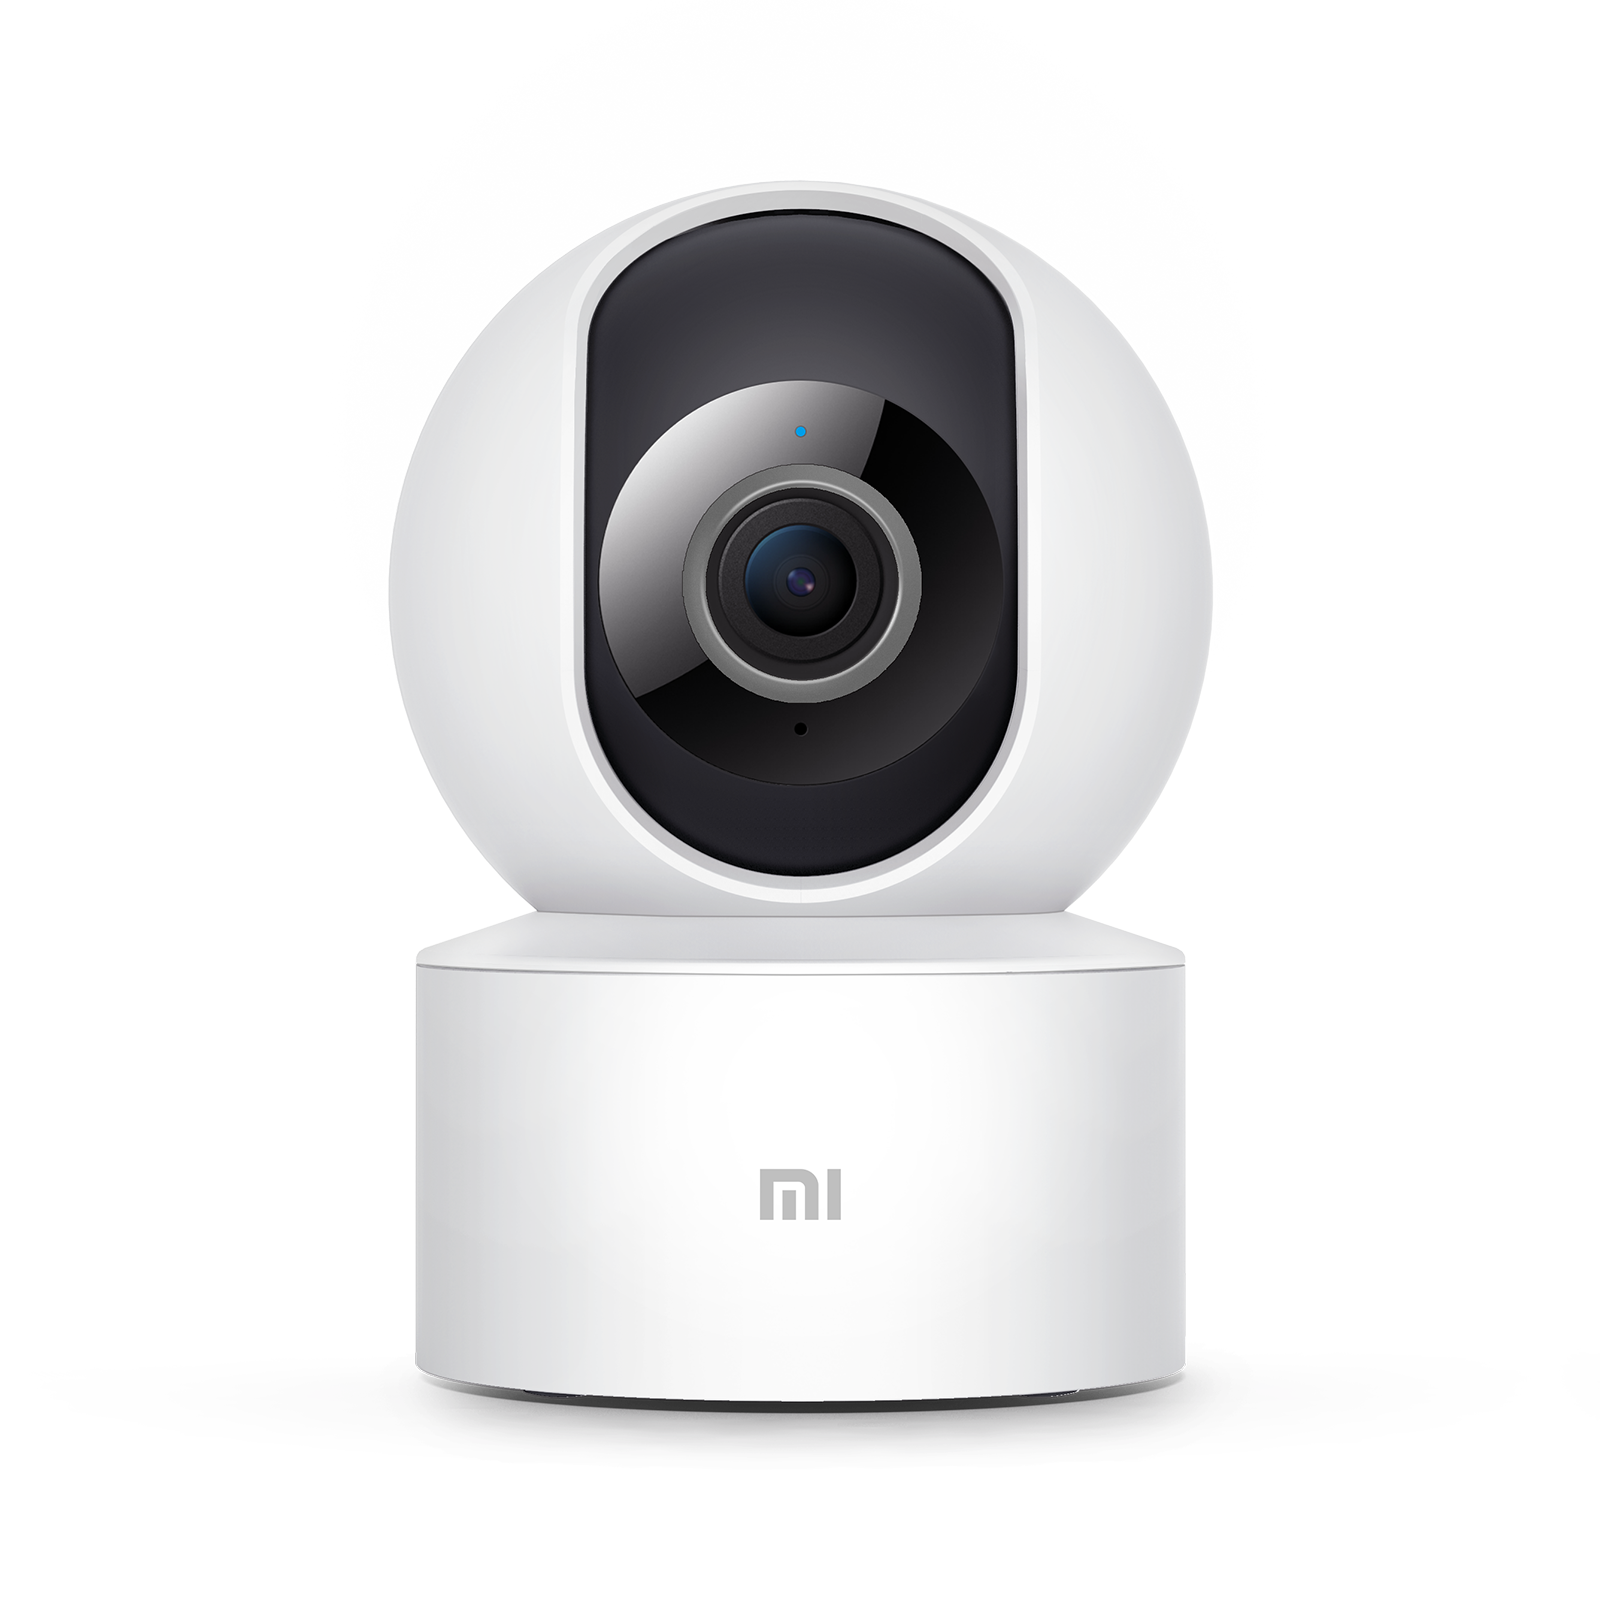  Xiaomi Mi cámara de seguridad para el hogar de 360° 1080p,  vista panorámica de 360°, protección completa 1080p, alta definición,  visión nocturna infrarroja, detección humana AI, blanco : Electrónica